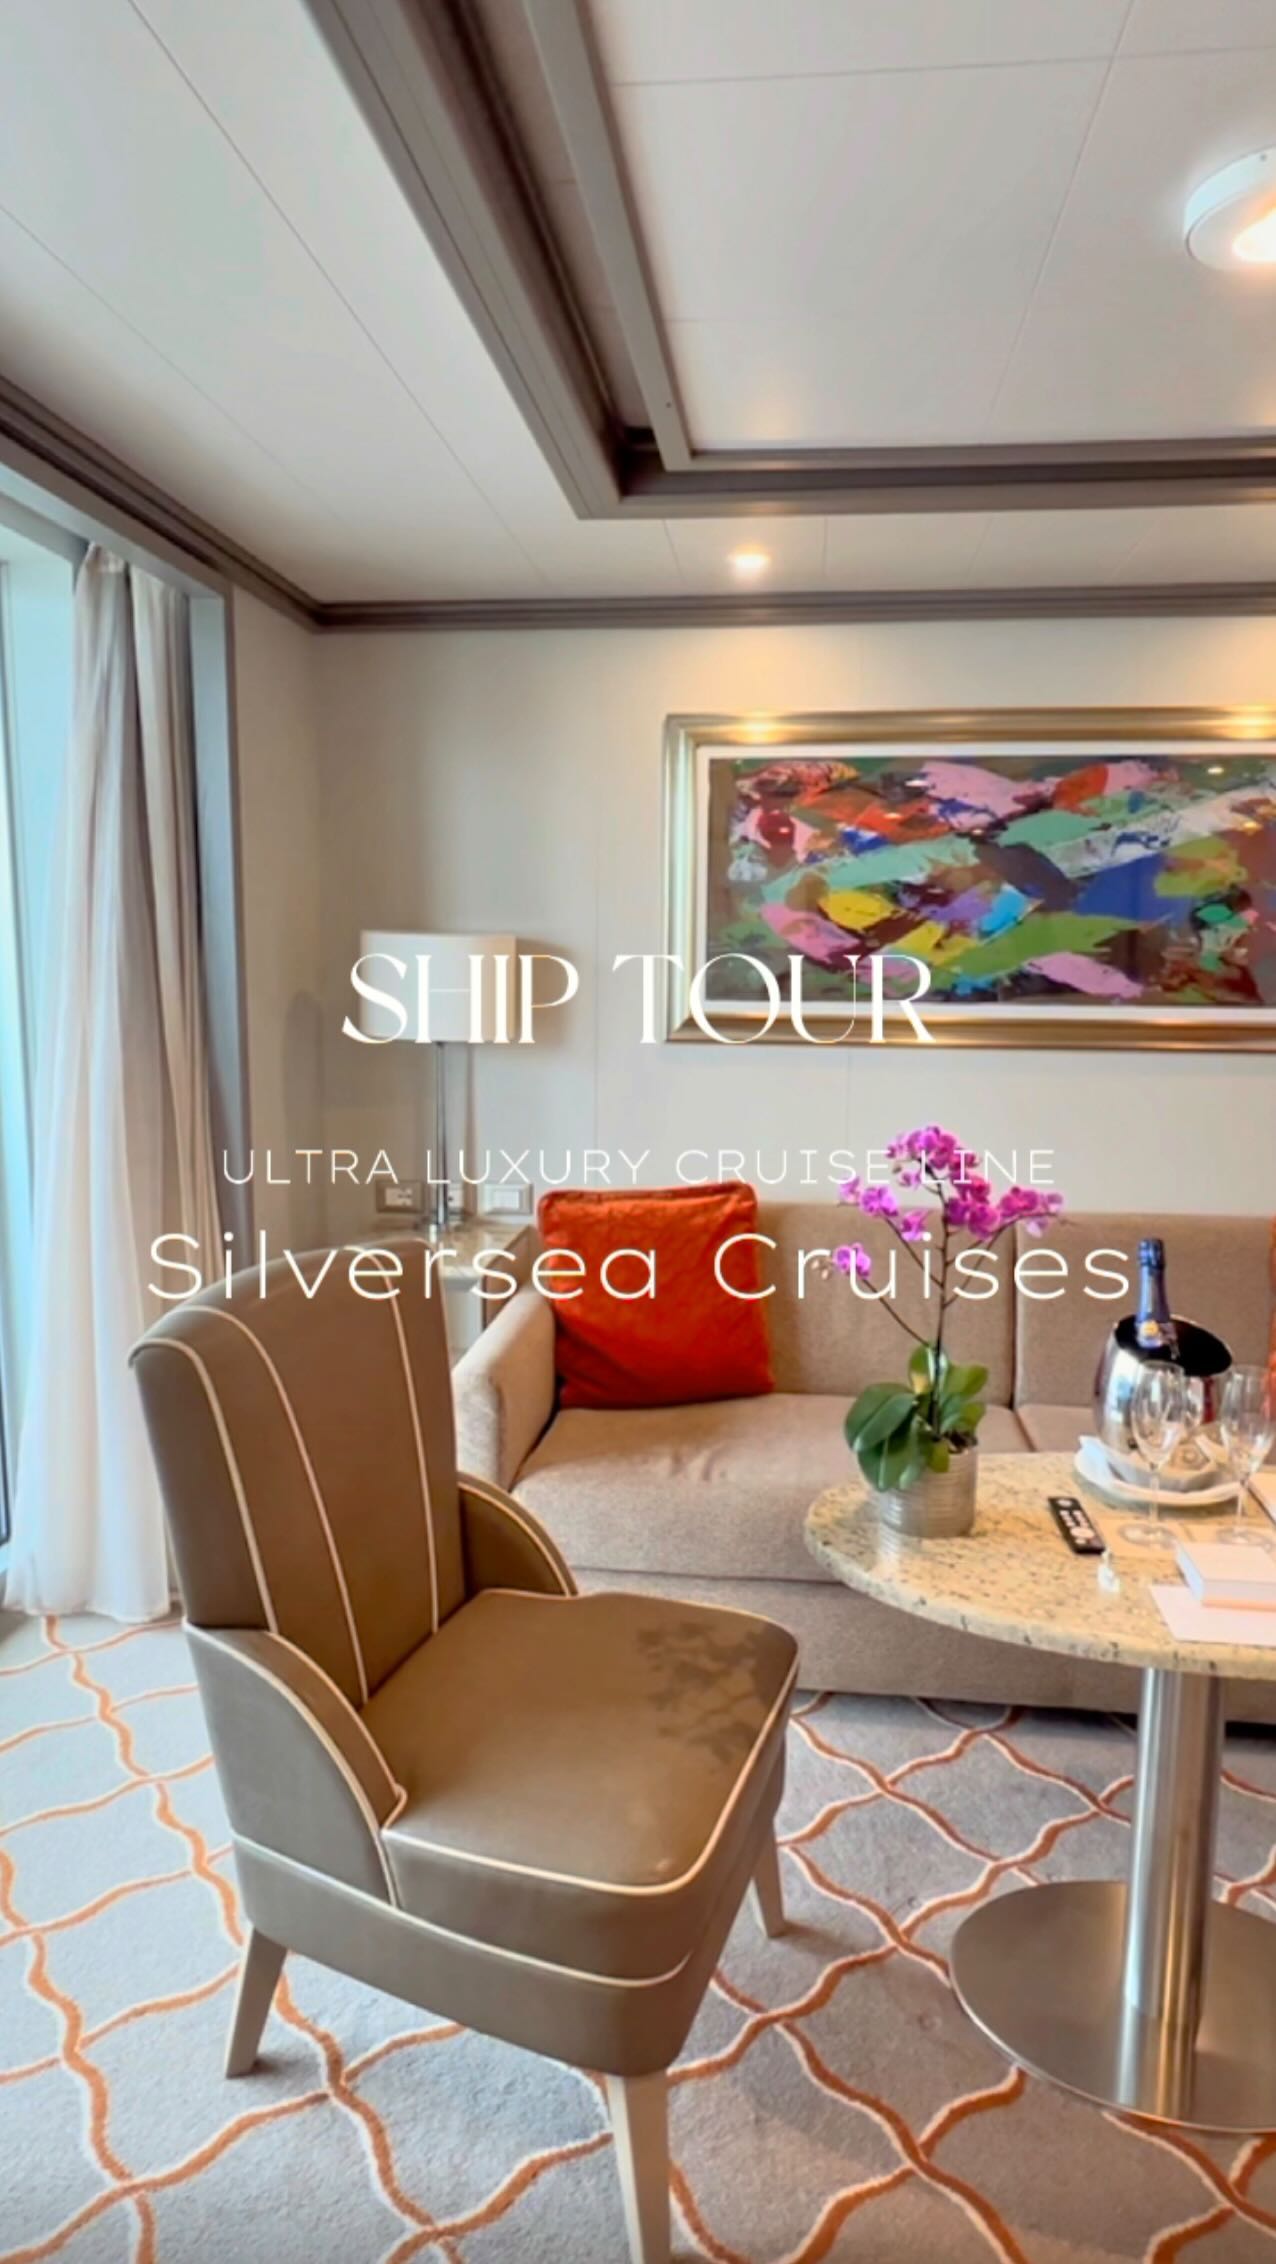 ⁡
CRUISE SHIP TOUR🚢
@silverseacruises
⁡
⁡
今年に入って注目しているクルーズ業界。
⁡
中でも”Ultra Luxury” と言われるクルーズ会社
「シルバーシークルーズ」の船内見学会にお邪魔しました！
⁡
⁡
現在、クルーズ業界では6〜7000人が乗船できる
20万トン以上の巨大シップもあるそうですが、
今回見せていただいたシルバーミューズは約4万トン、
乗客600名という小型船の部類。
⁡
業界唯一の全室バトラー付き。
全てのお部屋が海向きのスイートルーム仕様で
（巨大客船では窓がない内向きの価格を抑えたお部屋もある）
イメージとしては大型船のジュニアスイートのみ切り取って運行しているようなもの。
⁡
⁡
さらに、乗客と同じくらいのクルーが乗船しているのも、行き届いたパーソナライズサービスが受けられるポイントの一つ。
⁡
お食事にも定評があり、クルーズならではのオールインクルーシブ（一部チャージあり）をとことん楽しめそうでした！
⁡
客室は全室バスタブ付きで、
まるでラグジュアリーホテル。
⁡
ゆったり客室で過ごしながら、各寄港地までの移動も楽しめるクルーズはファンが多いことに納得です。
⁡
⁡
⁡
⁡
ストーリーにも書いたけれど、
お値段はカジュアル船の2〜30倍。
⁡
誰でも気軽に乗れるわけではないとしても、
その価値と魅力を知って乗船している方々との出会いも
きっとシルバーシーに乗る理由の一つになるんだろうな。
⁡
個人的には南極路線などもすごく気になるところ。。
⁡
2025年1月13日日本発、136泊30ヶ国59寄港地の世界一周クルーズもあるそう🫢
⁡
⁡
⁡
乗り物酔いが激しく、クルーズとは一生無縁…と思っていた私ですが、 @cruise_ism さんとのお仕事をきっかけに、クルーズ旅の魅力に誘惑されています。
⁡
直近でもう2回ほど船内見学にお邪魔する予定なので
またレポします📝
⁡
⁡
⁡
#クルーズイズム_船内見学会
#ラグジュアリークルーズ
#豪華客船
#オールインクルーシブ
#シルバーシー 
#シルバーシークルーズ#silversea
#silvermuse #luxurycruise